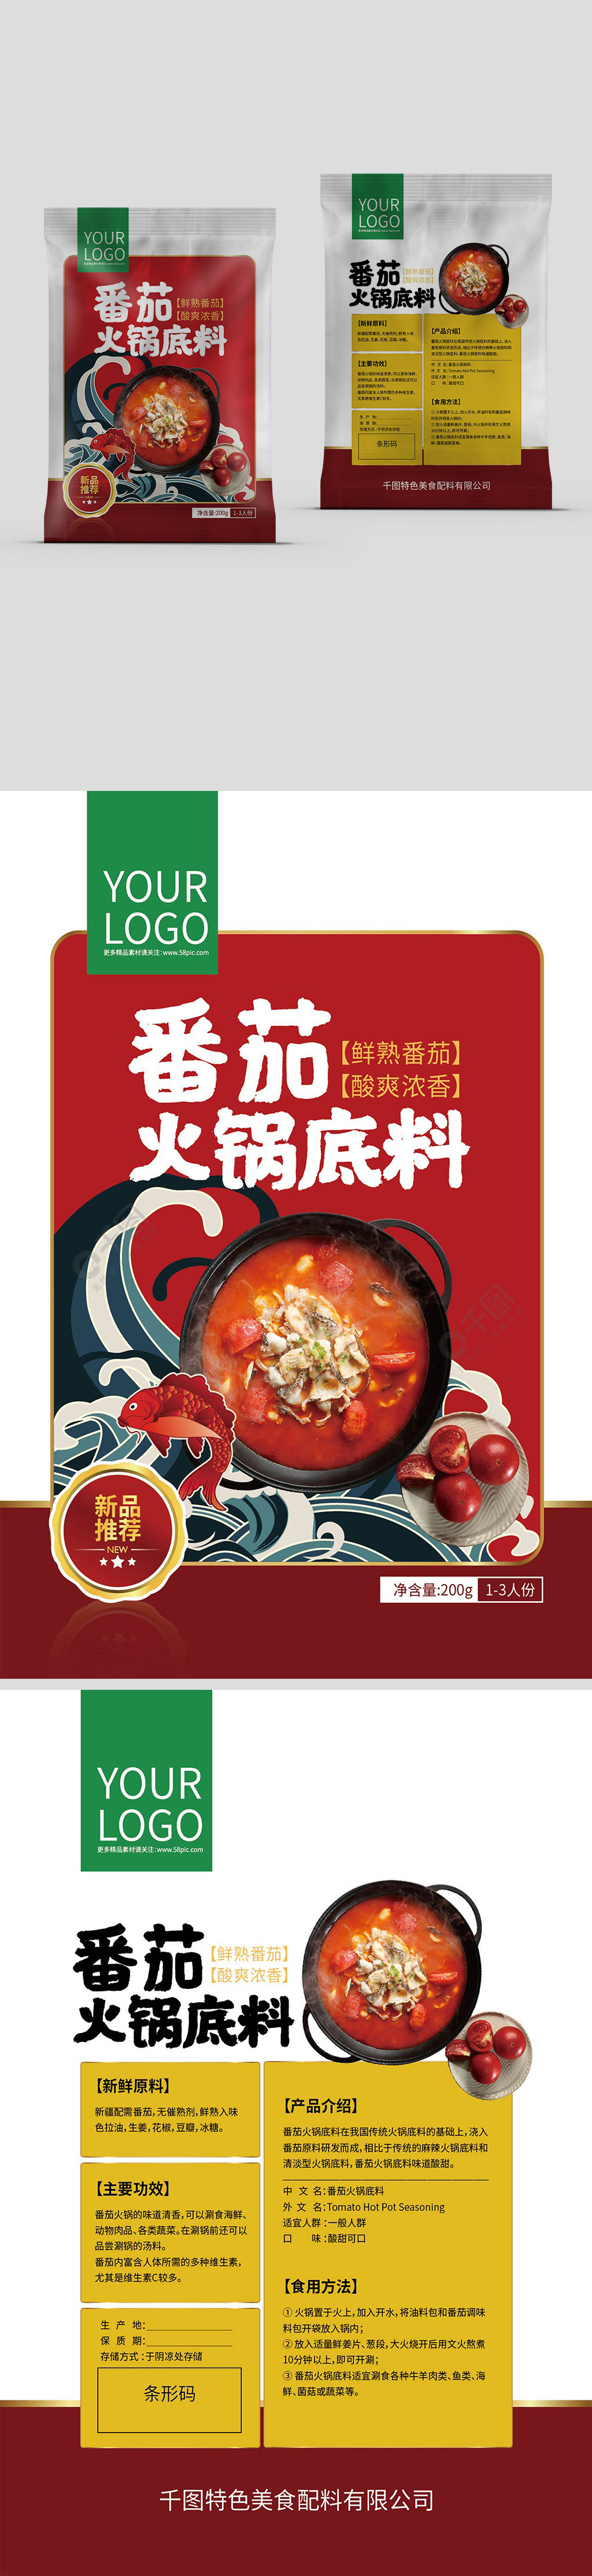 番茄味火锅底料包装设计1年前发布